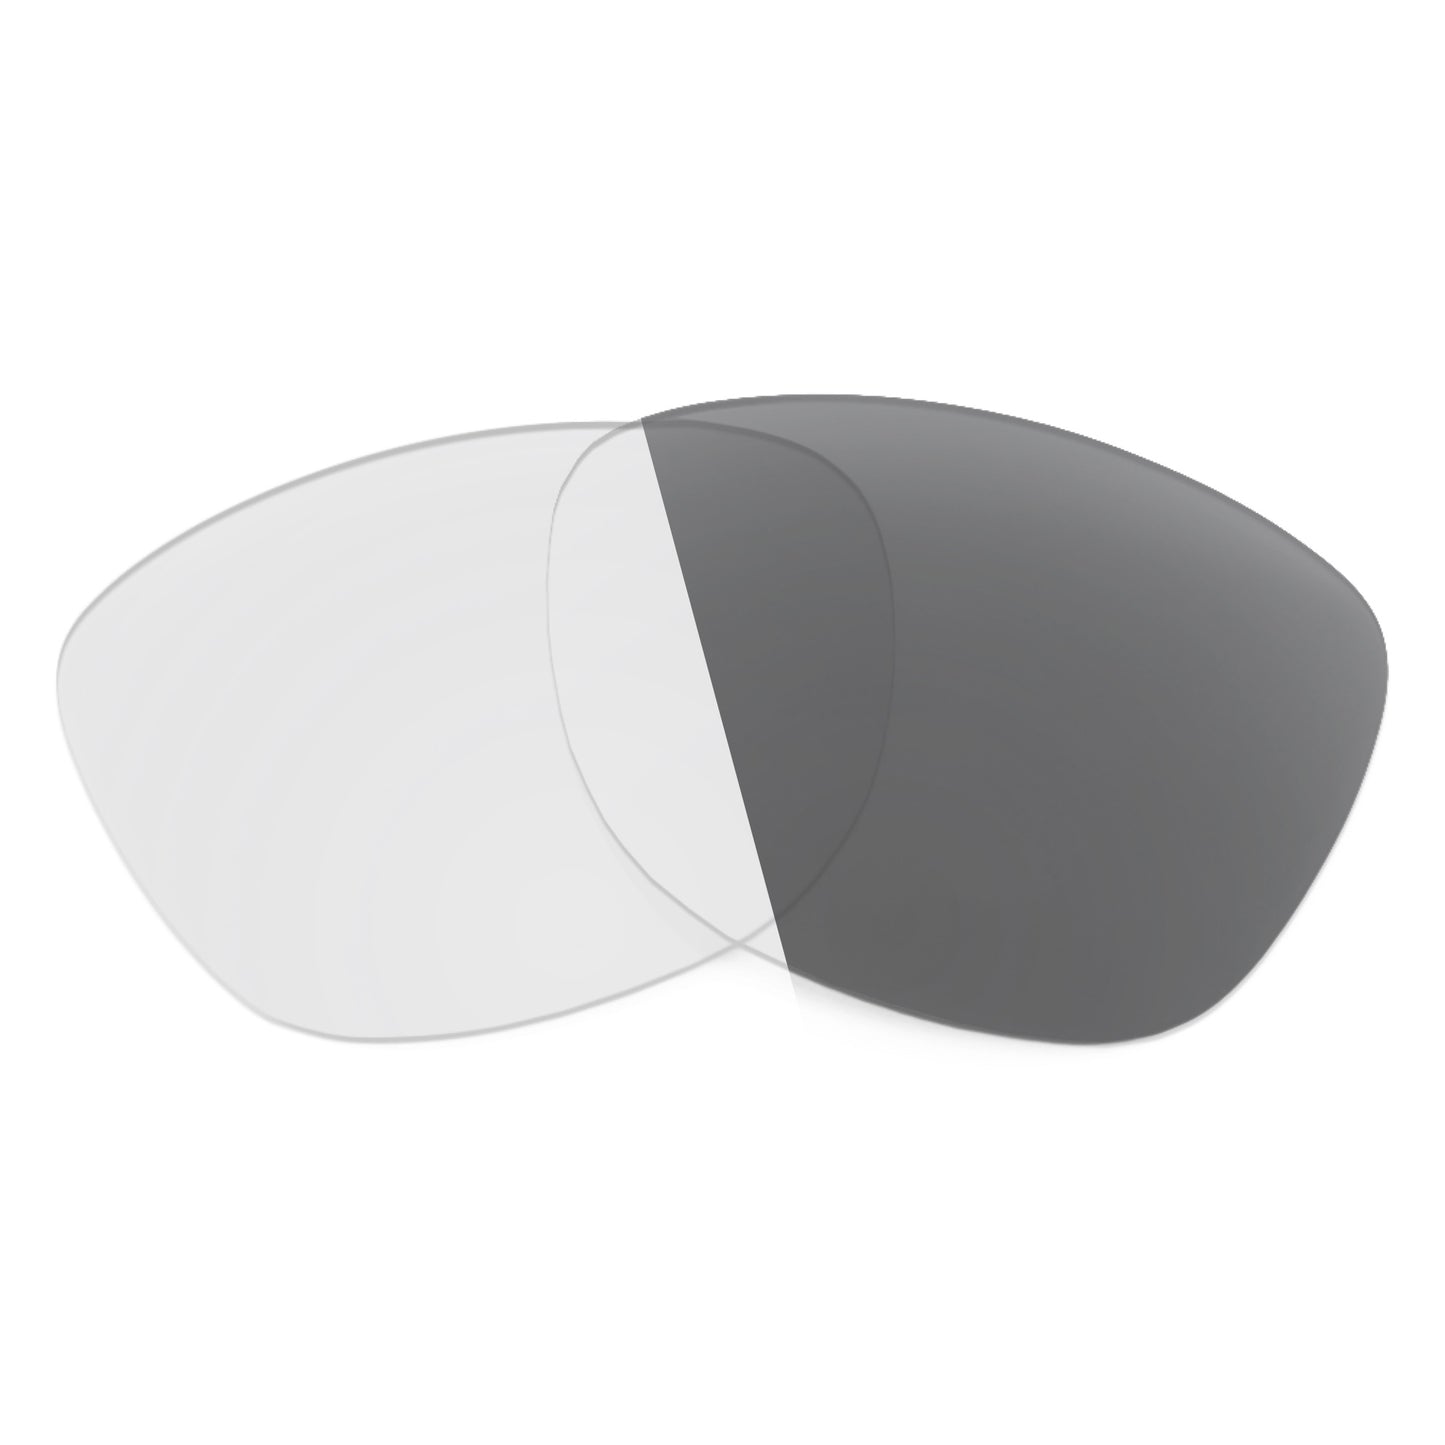 Revant replacement lenses for Oakley Stringer Non-Polarized Adapt Gray Photochromic